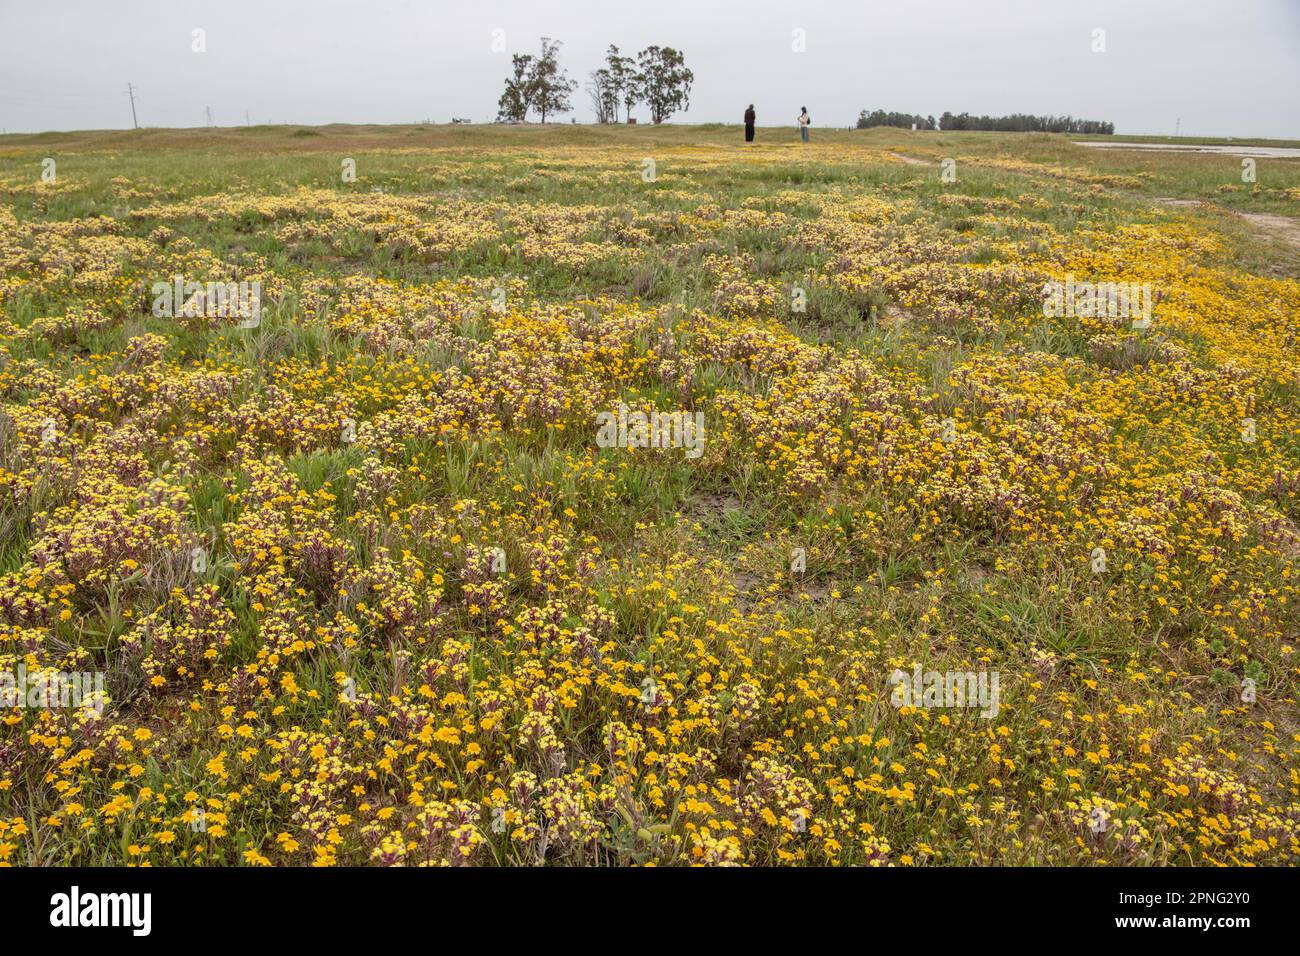 Im Central Valley von Kalifornien blühende Wildblumen aus dem vernalen Pool. Gelber johnny Tuck, Triphysaria und Fremonts Goldfelder, Lasthenia. Stockfoto